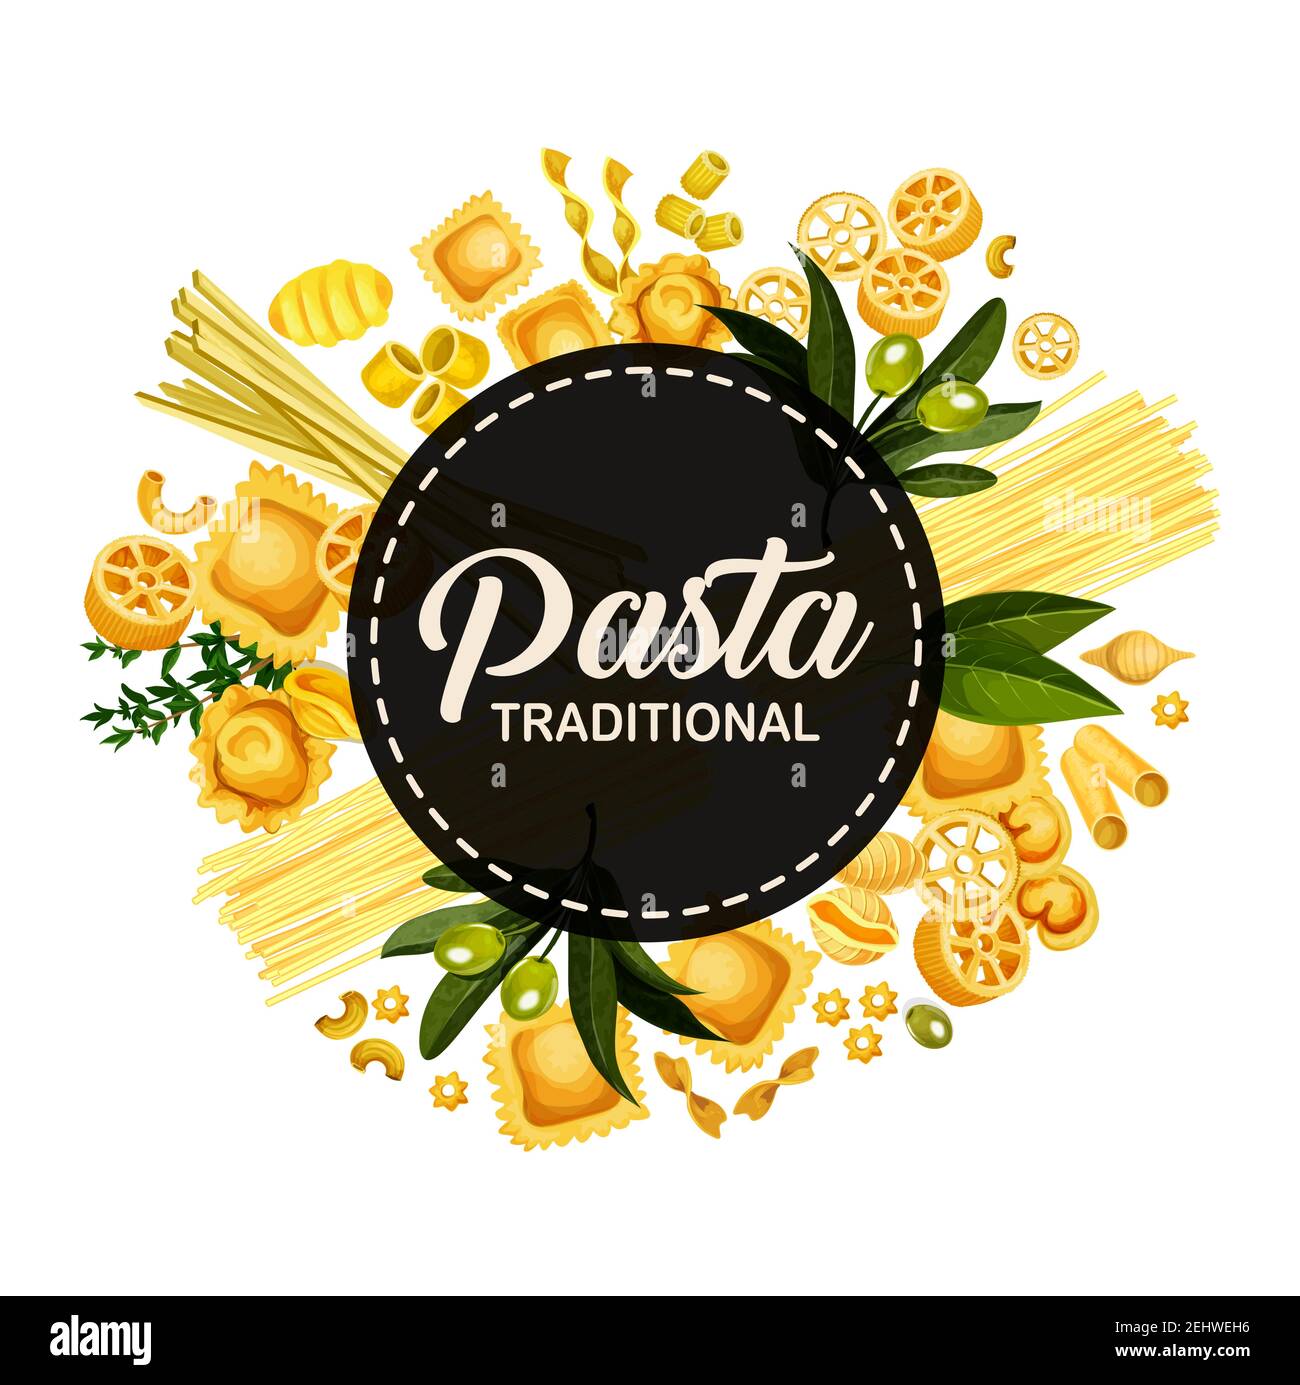 Il menu della pasta italiana copre il design, il ristorante italiano di cucina tradizionale spaghetti, fettuccine e ravioli. Tagliatelle, lasagna o linguine di pasta vettoriale Illustrazione Vettoriale